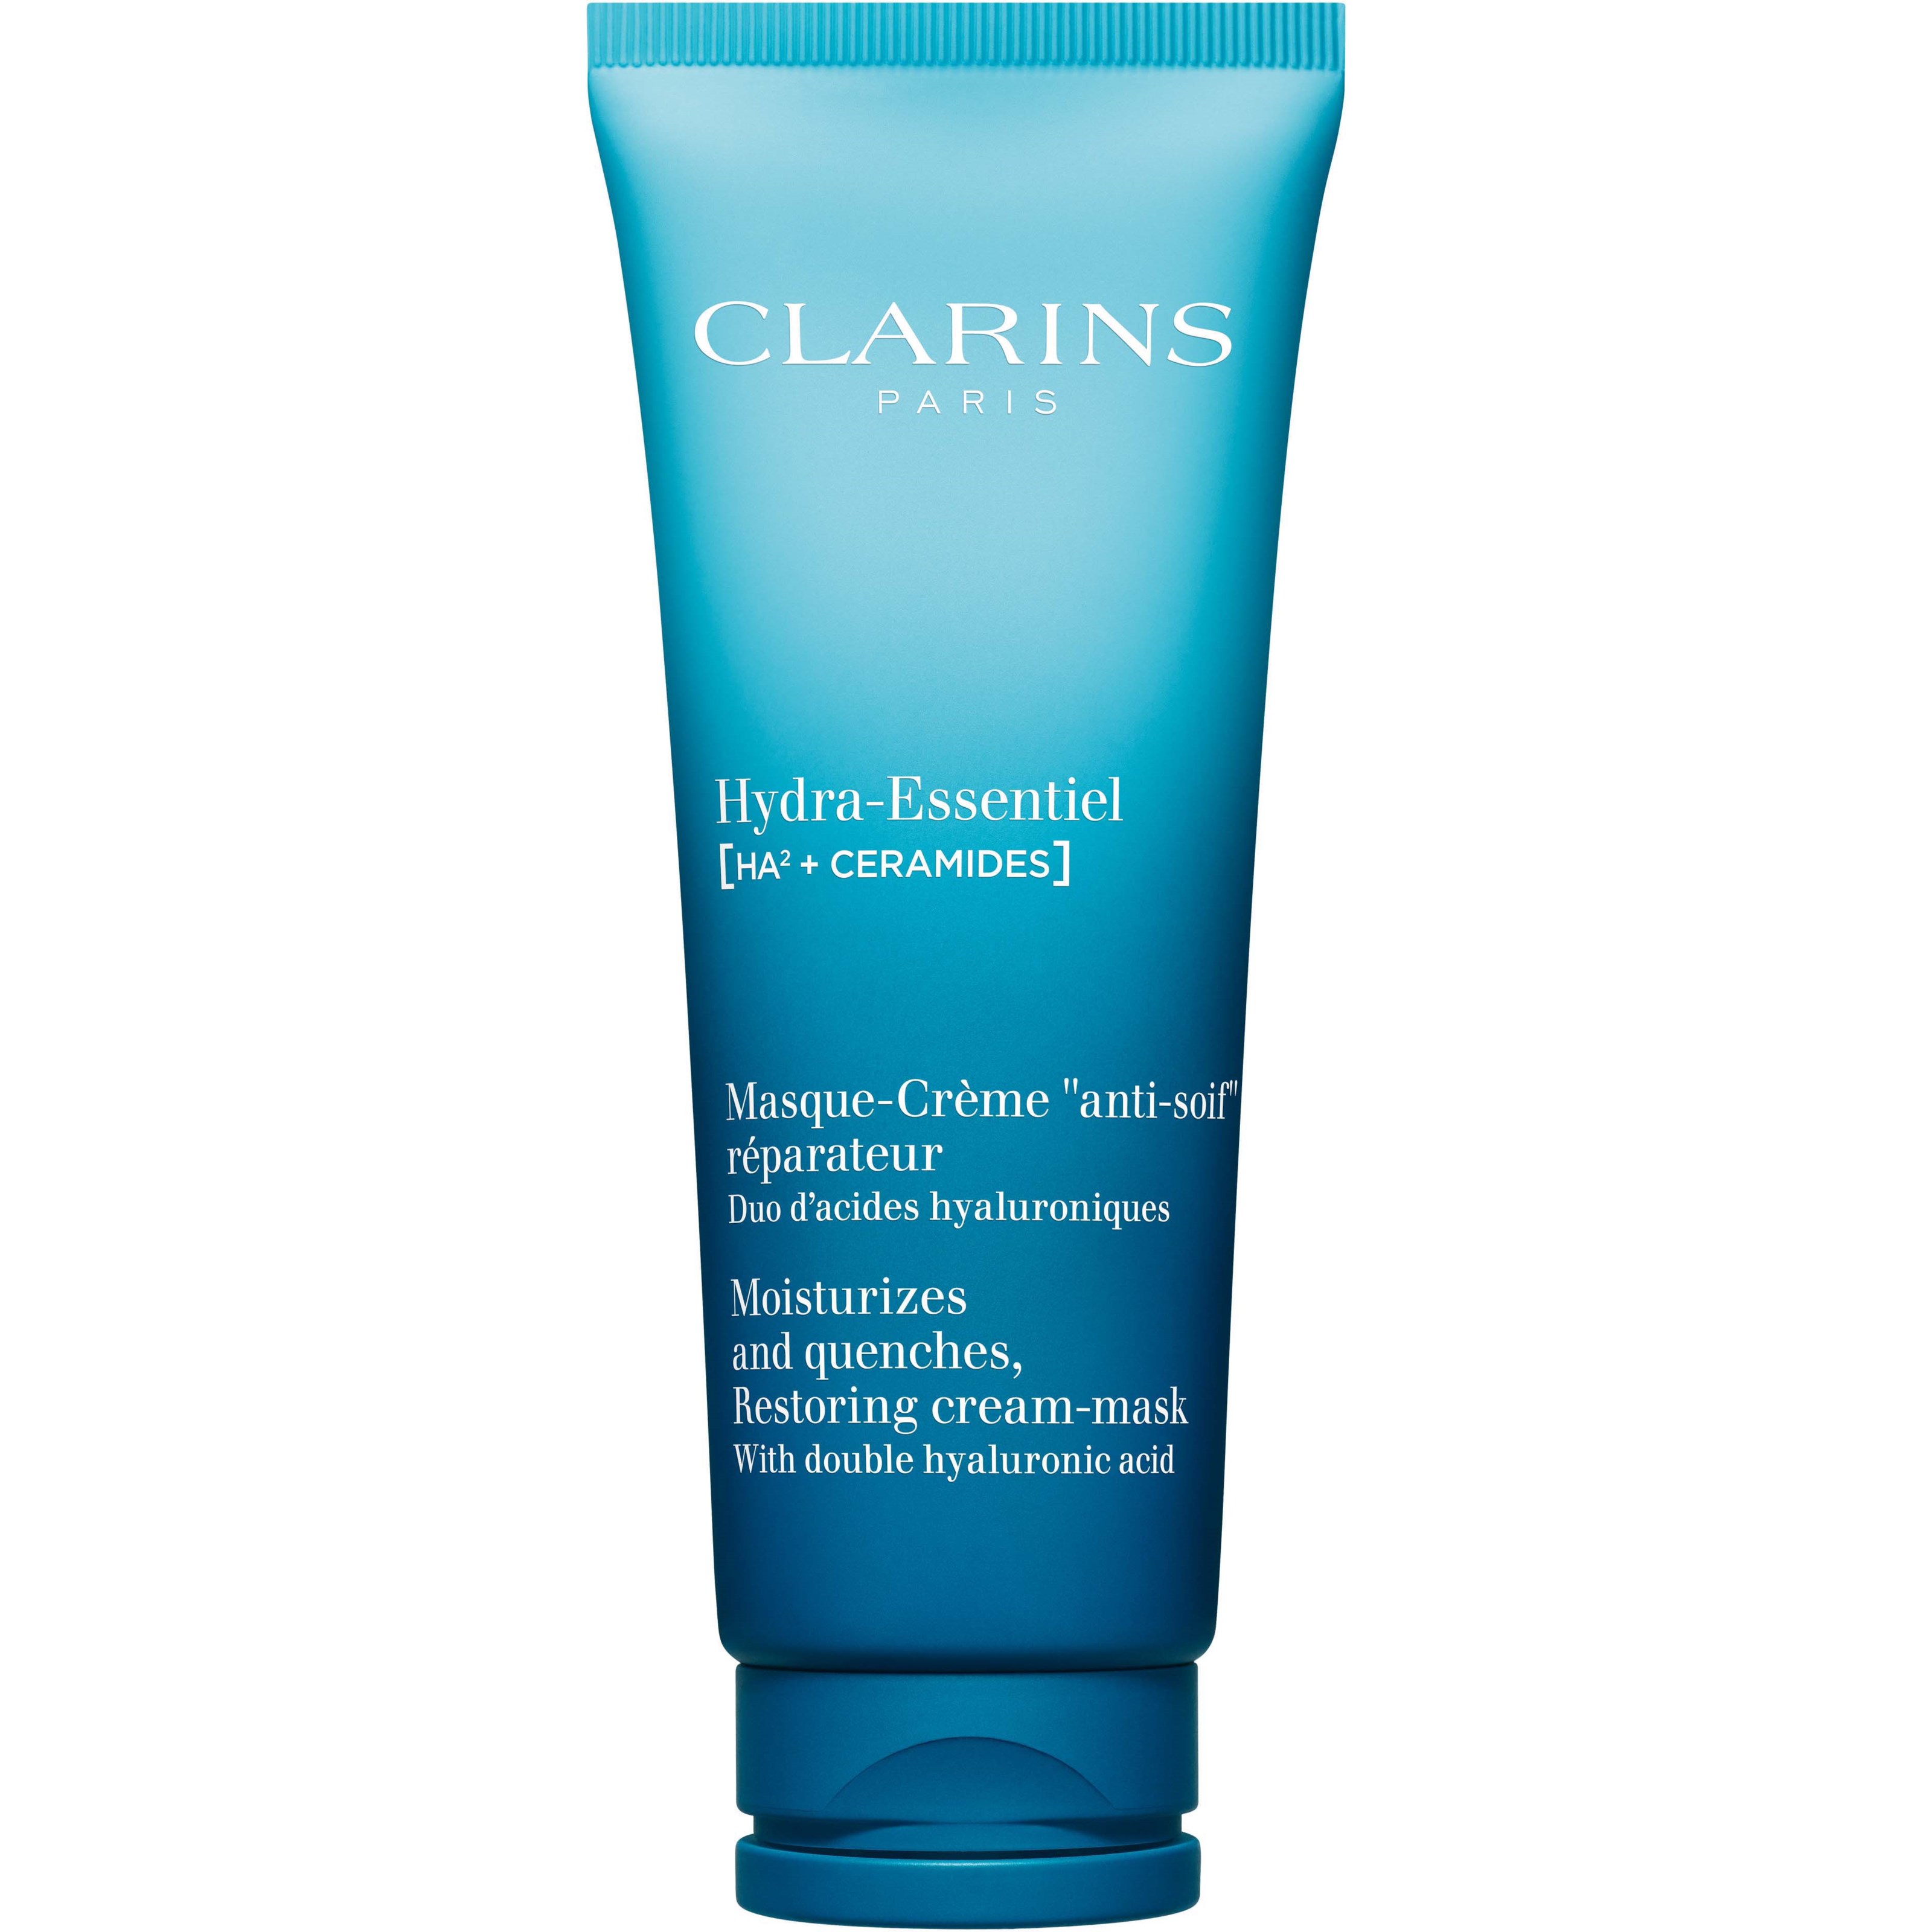 Clarins Hydra-Essentiel Moisturizes and Quenches, Restoring Cream